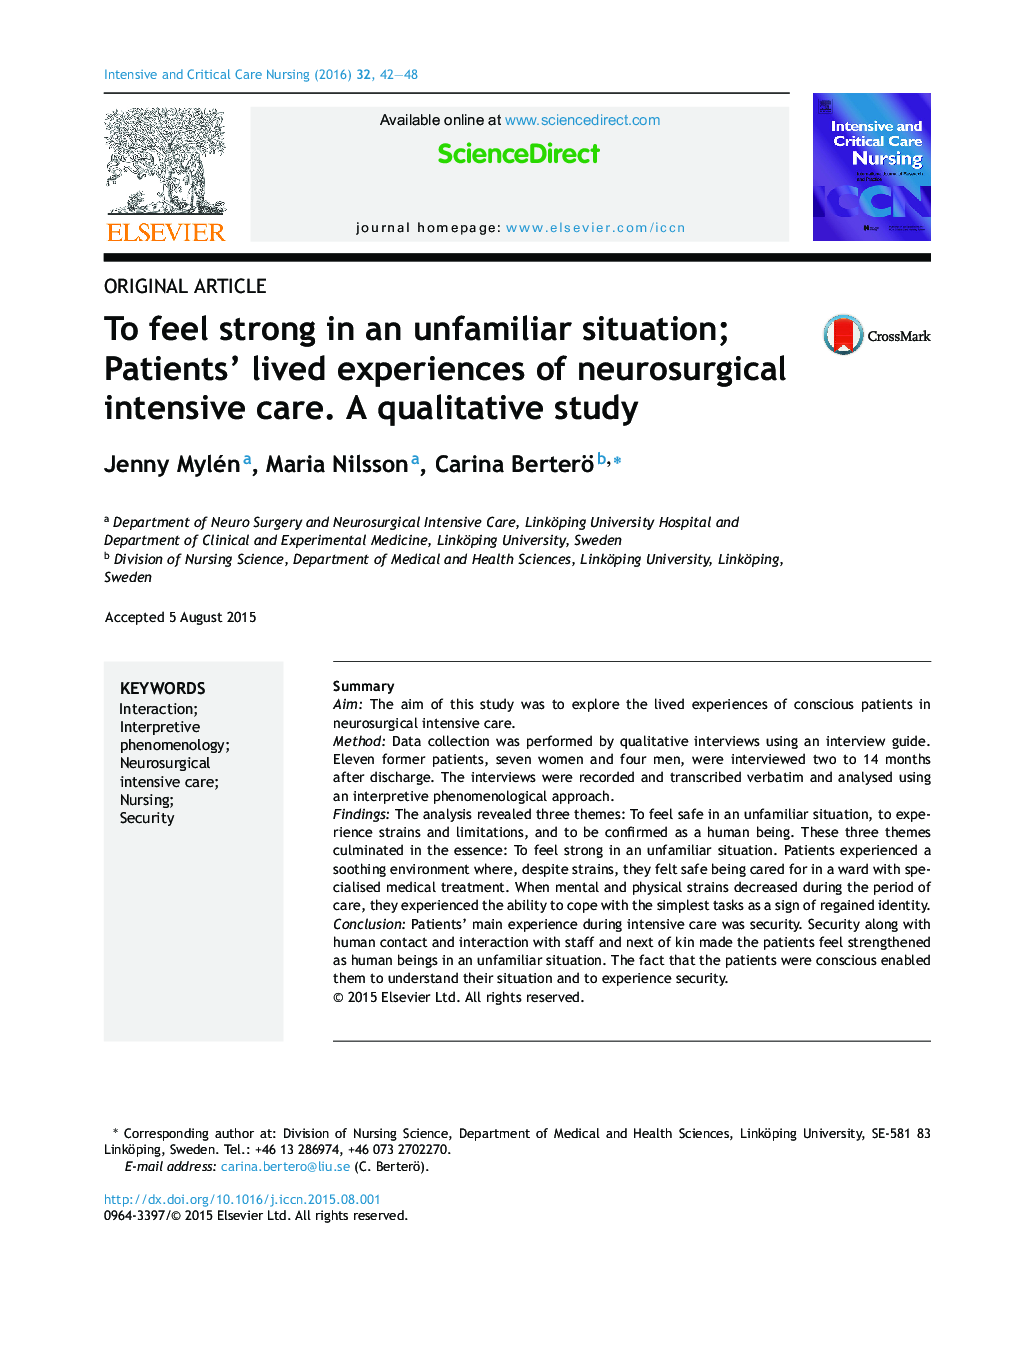 مقاله اصلی برای احساس قدرت در وضعیت نا آشنا؛ تجربه های زندگی بیماران از مراقبت های ویژه جراحی مغز و اعصاب. یک مطالعه کیفی 